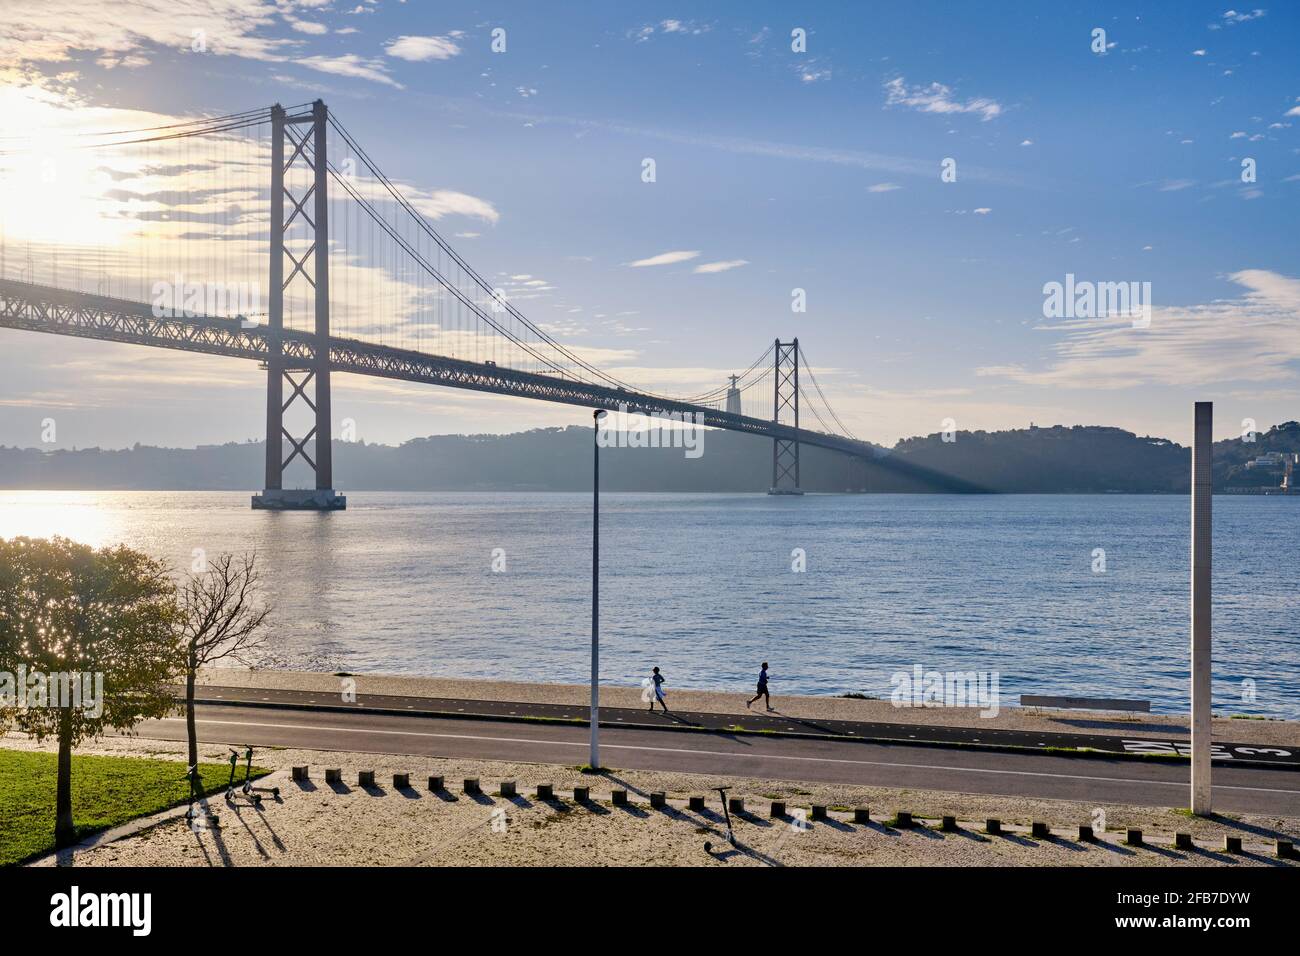 Dawn sulle rive del fiume Tago, vicino al ponte 25 aprile. Lisbona, Portogallo Foto Stock